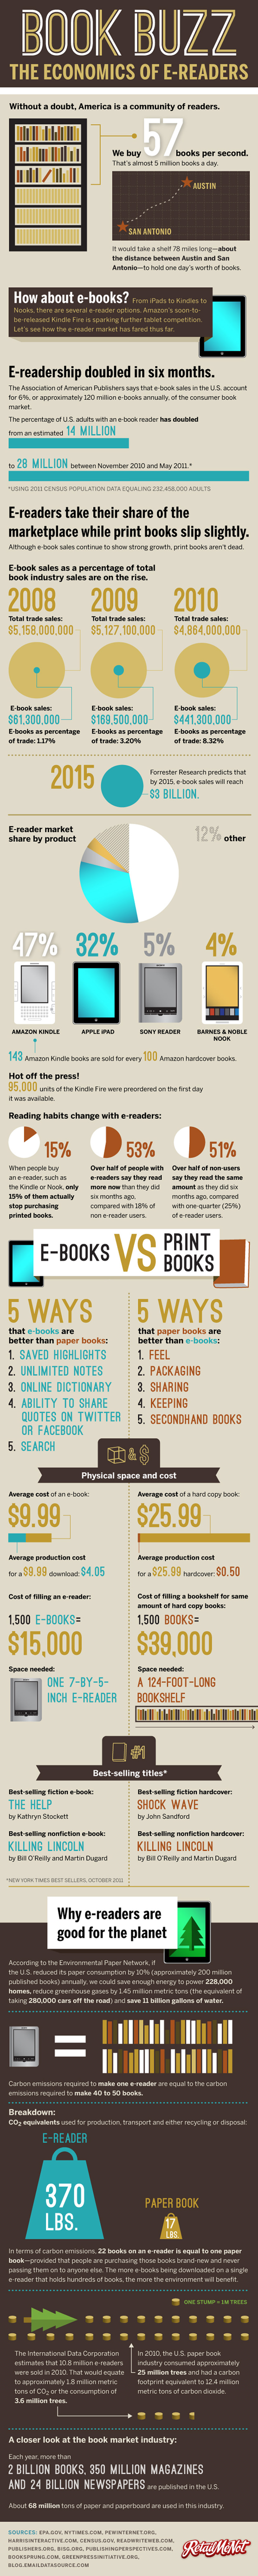 ebook vs book infographic comparison